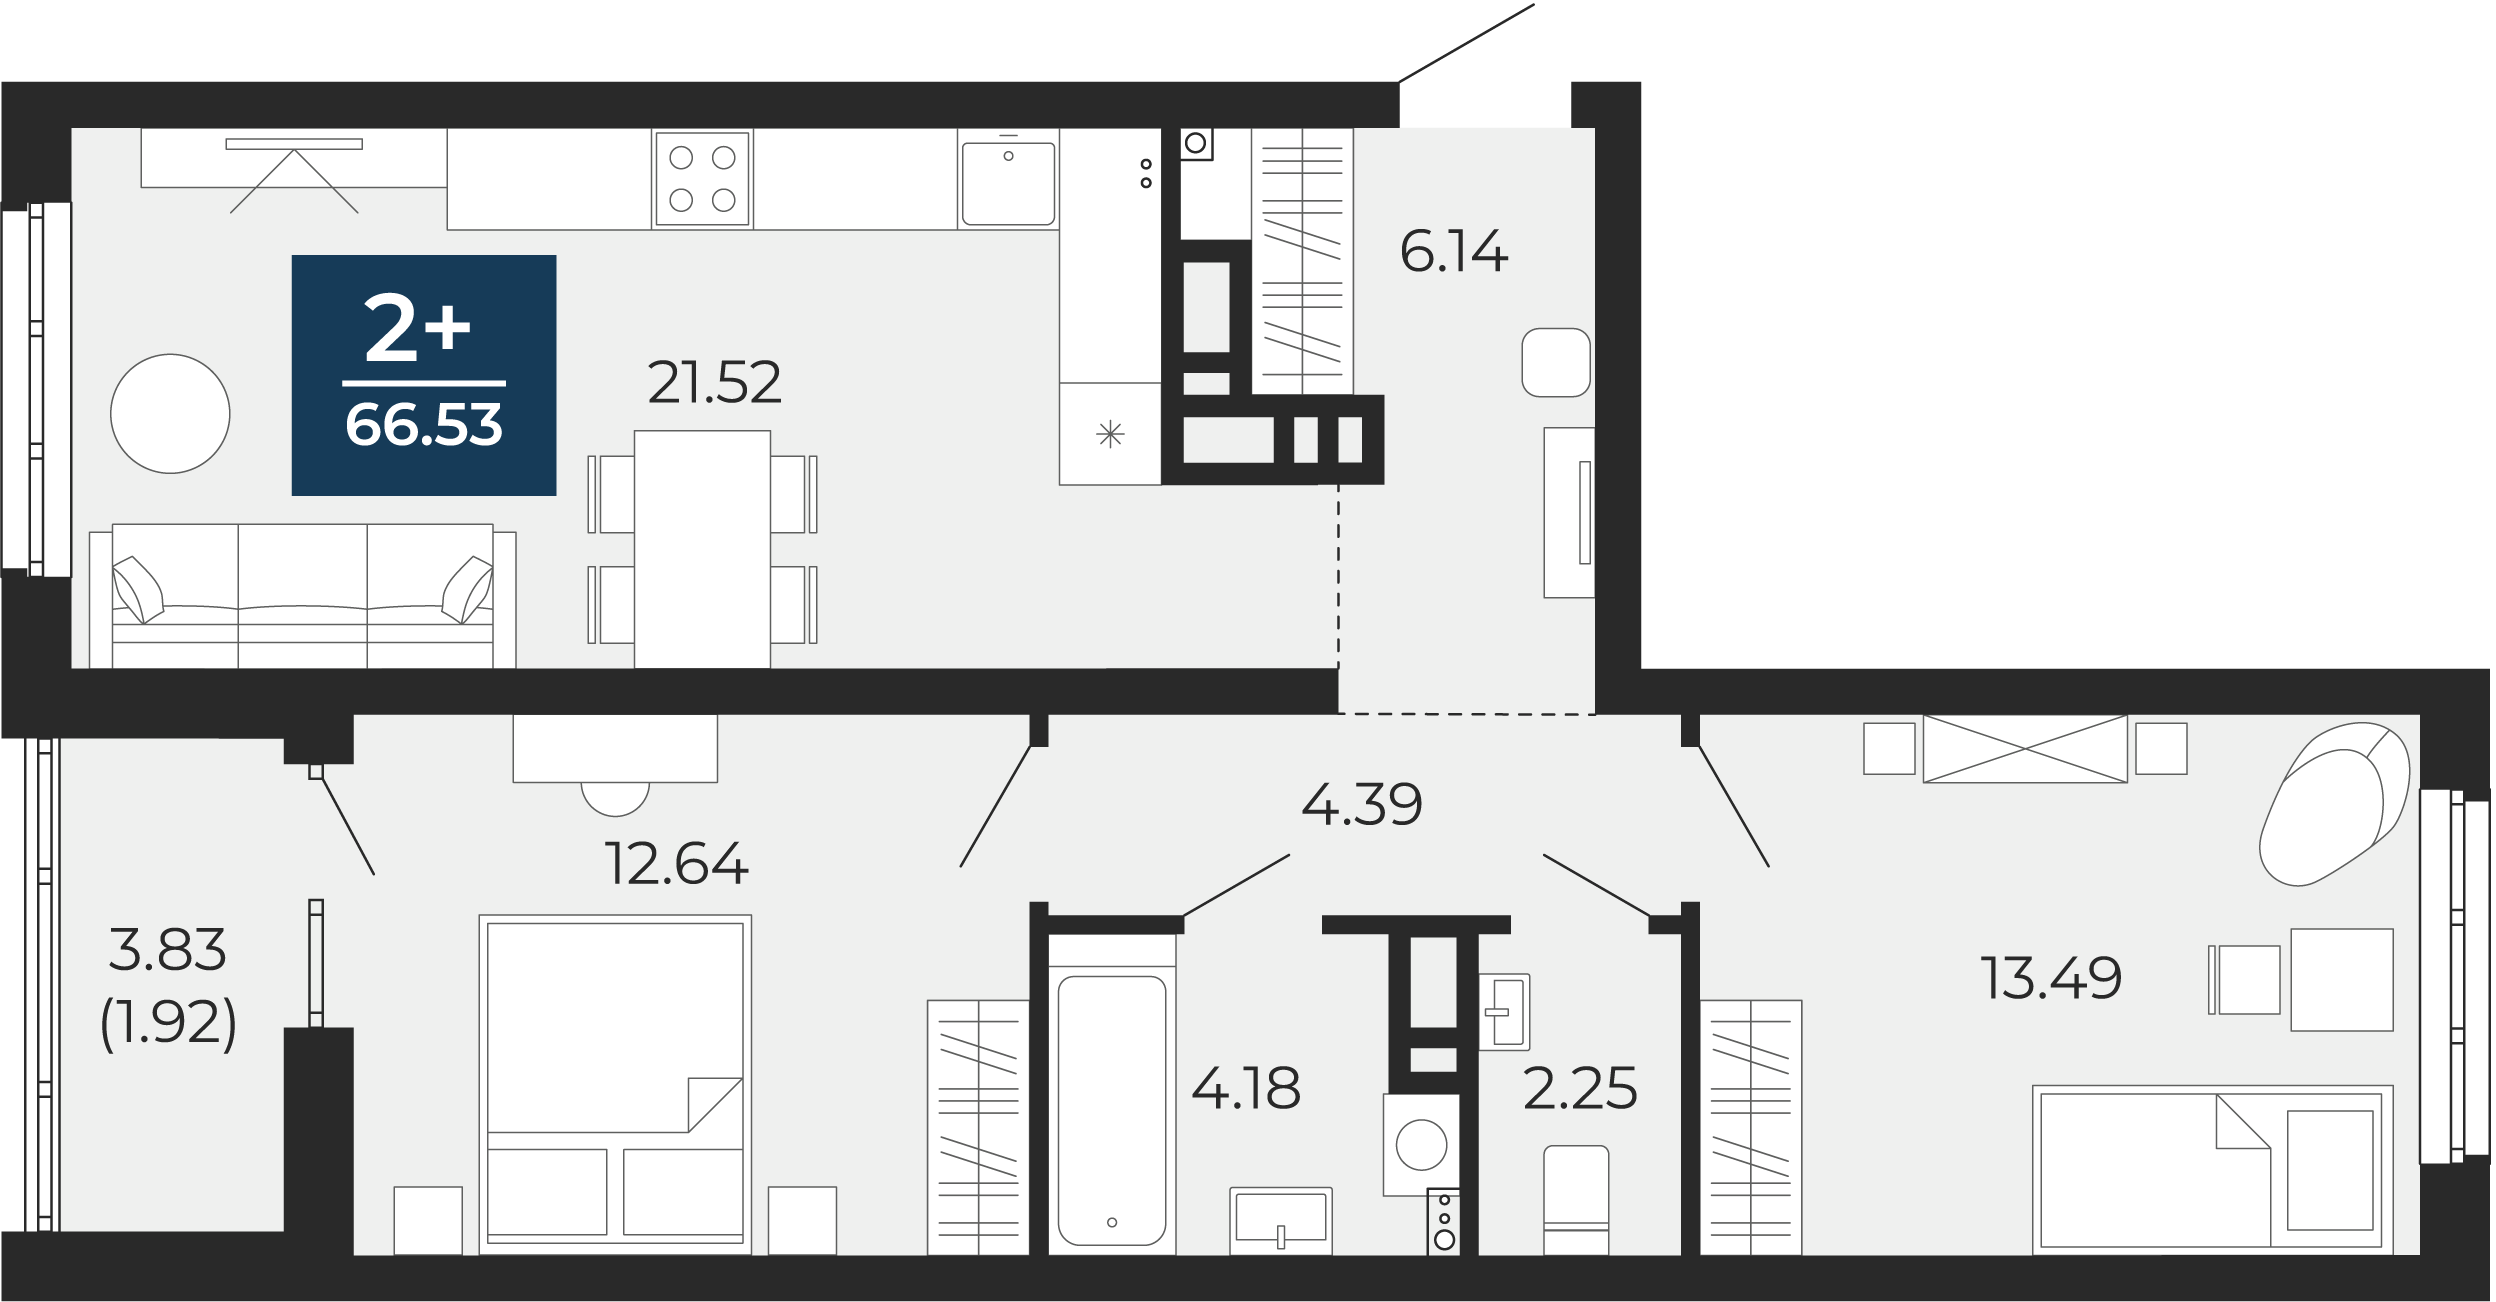 Квартира № 141, 2-комнатная, 66.53 кв. м, 6 этаж